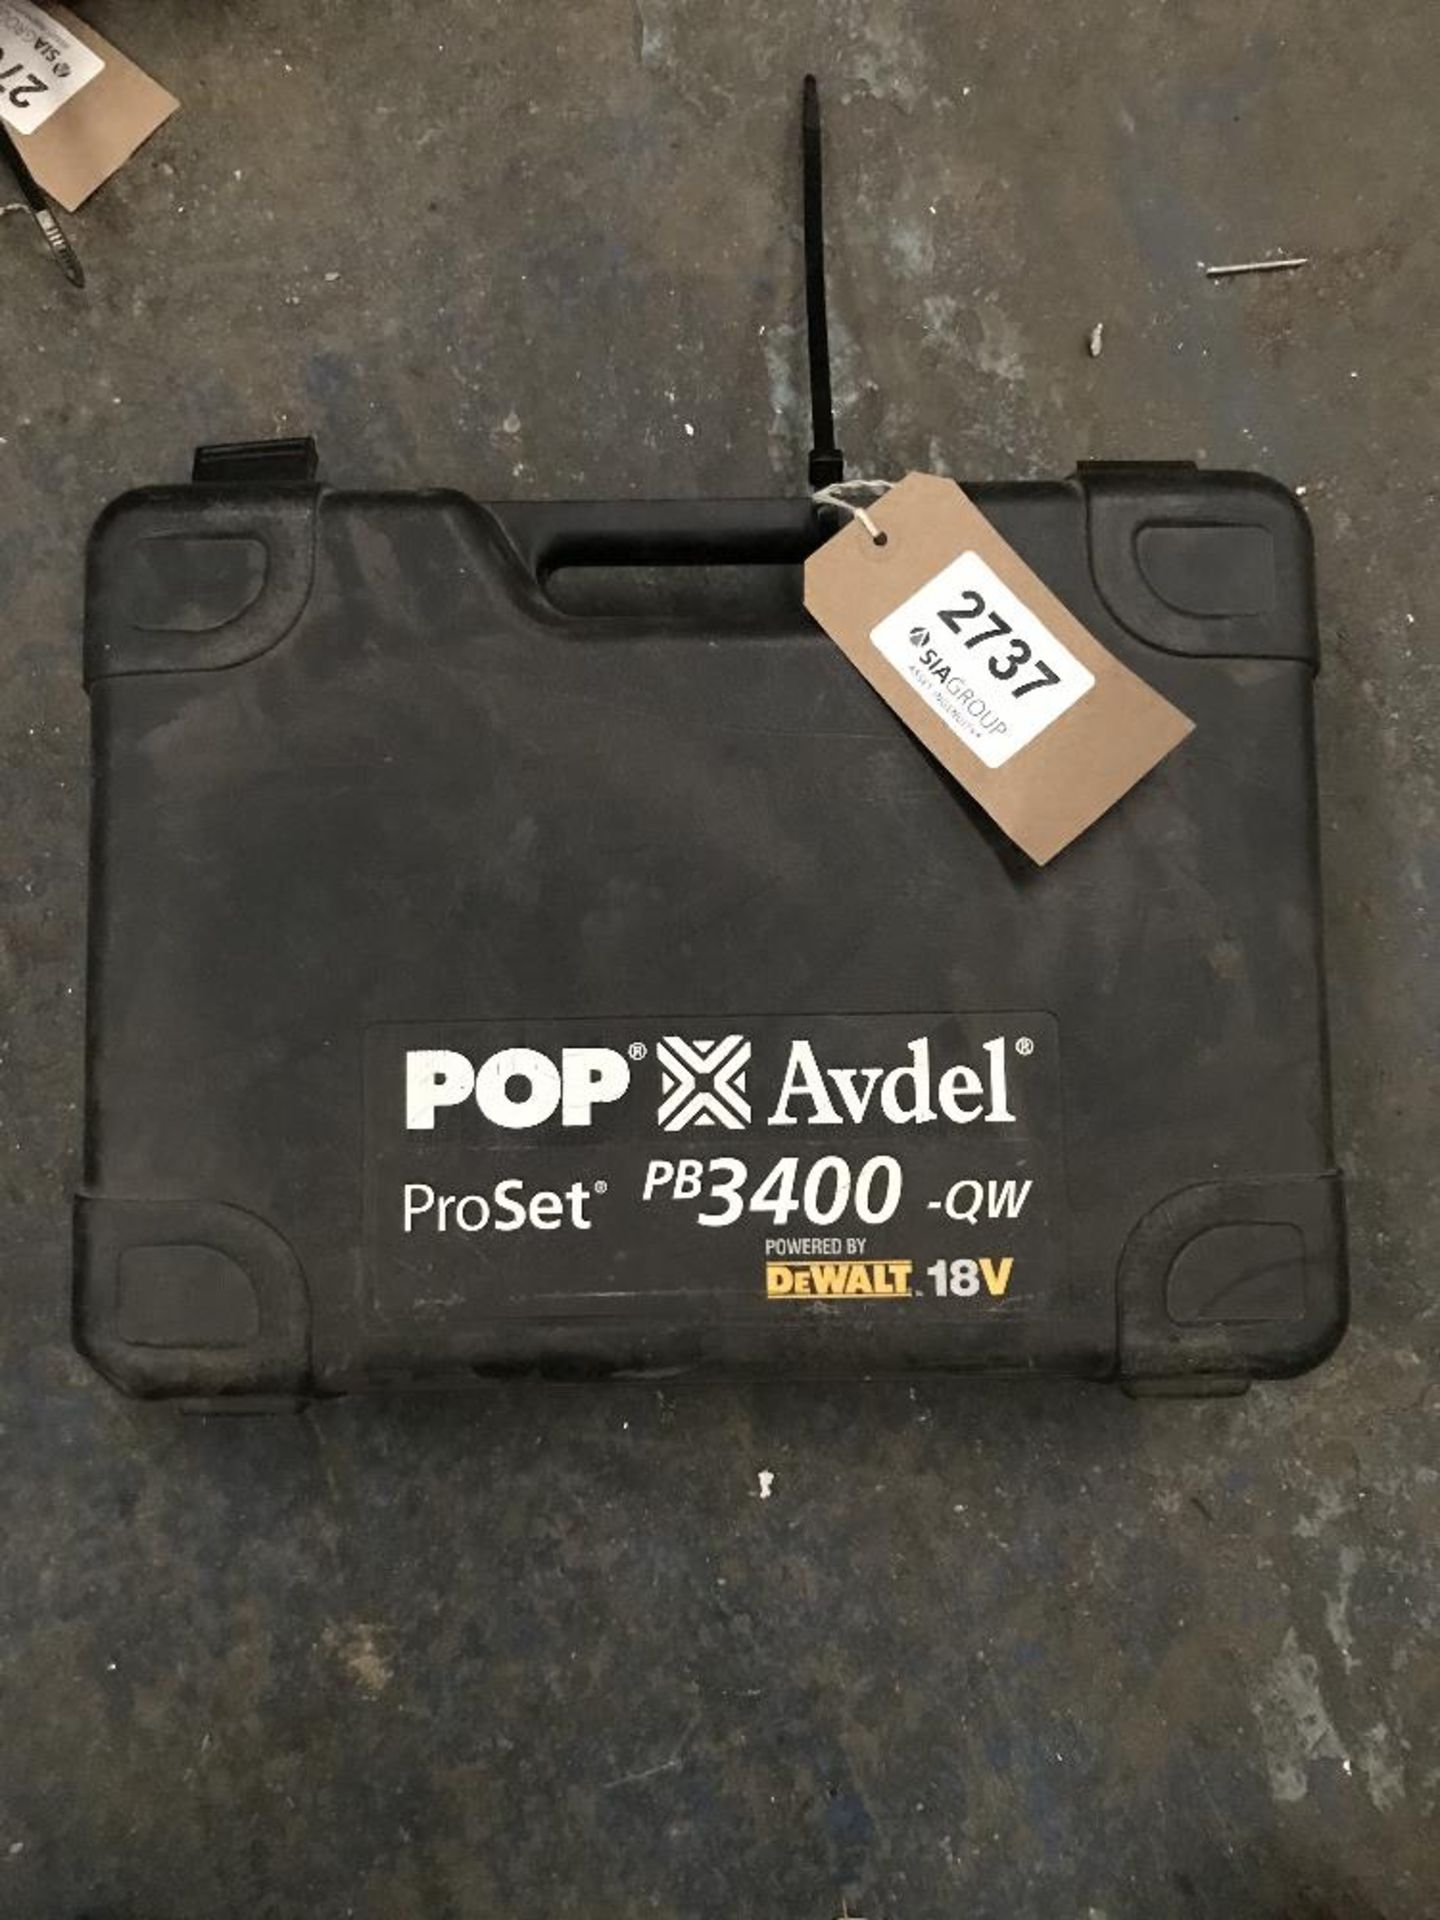 Pop Avdel Proset Rechargable Rivetor - Missing Battery